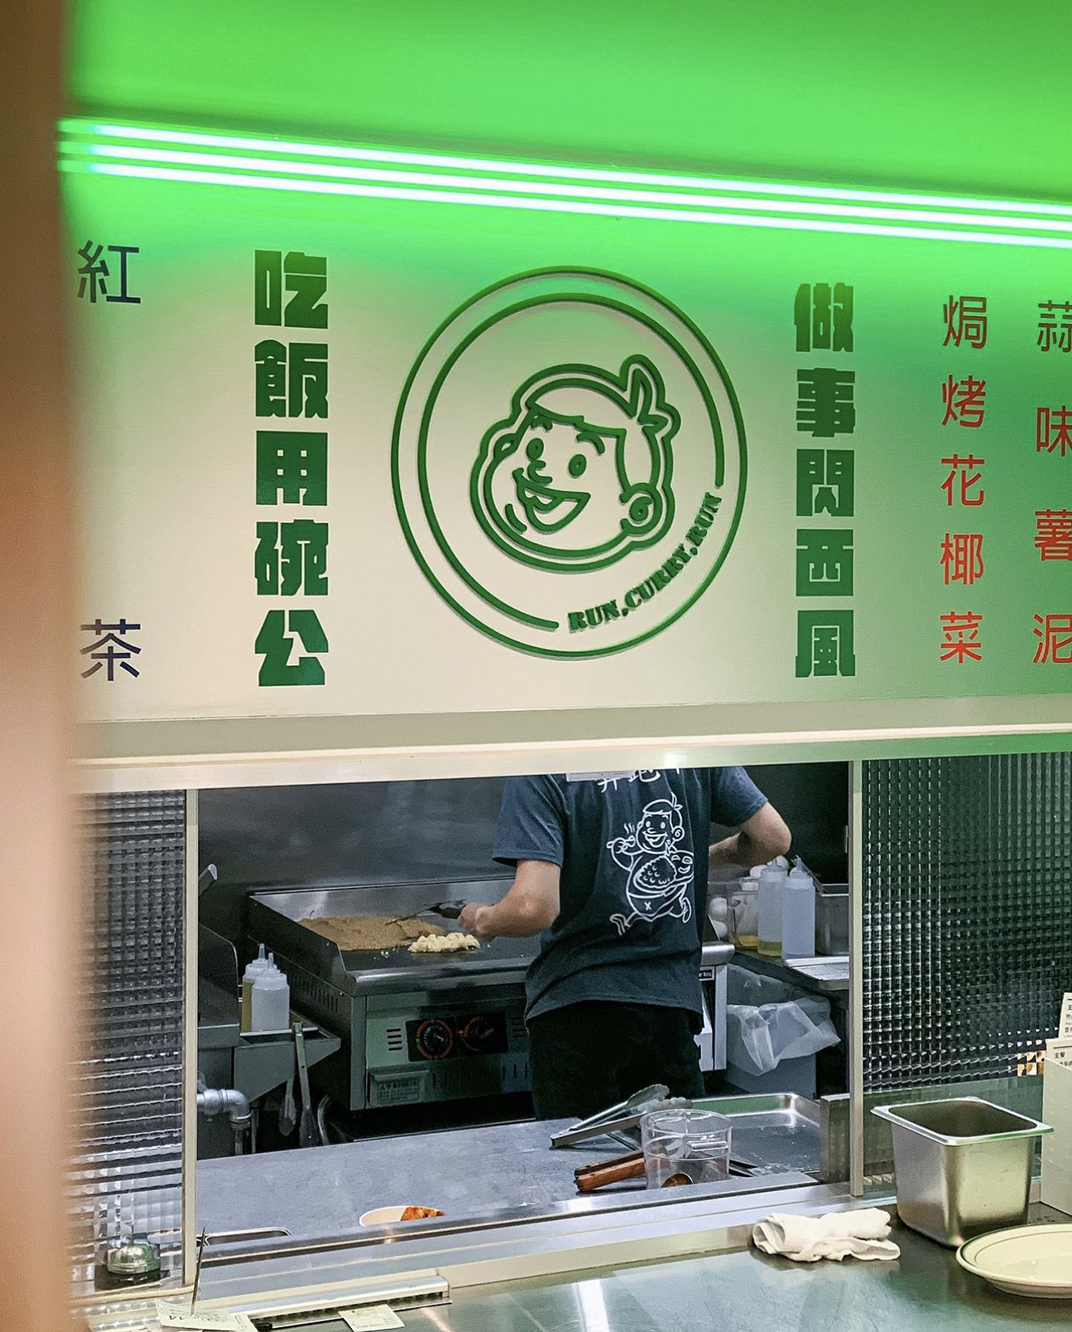 台式餐厅嘎哩奔Run Curry Run 台湾 北京 上海 成都 武汉 杭州 广州 澳门 logo设计 vi设计 空间设计